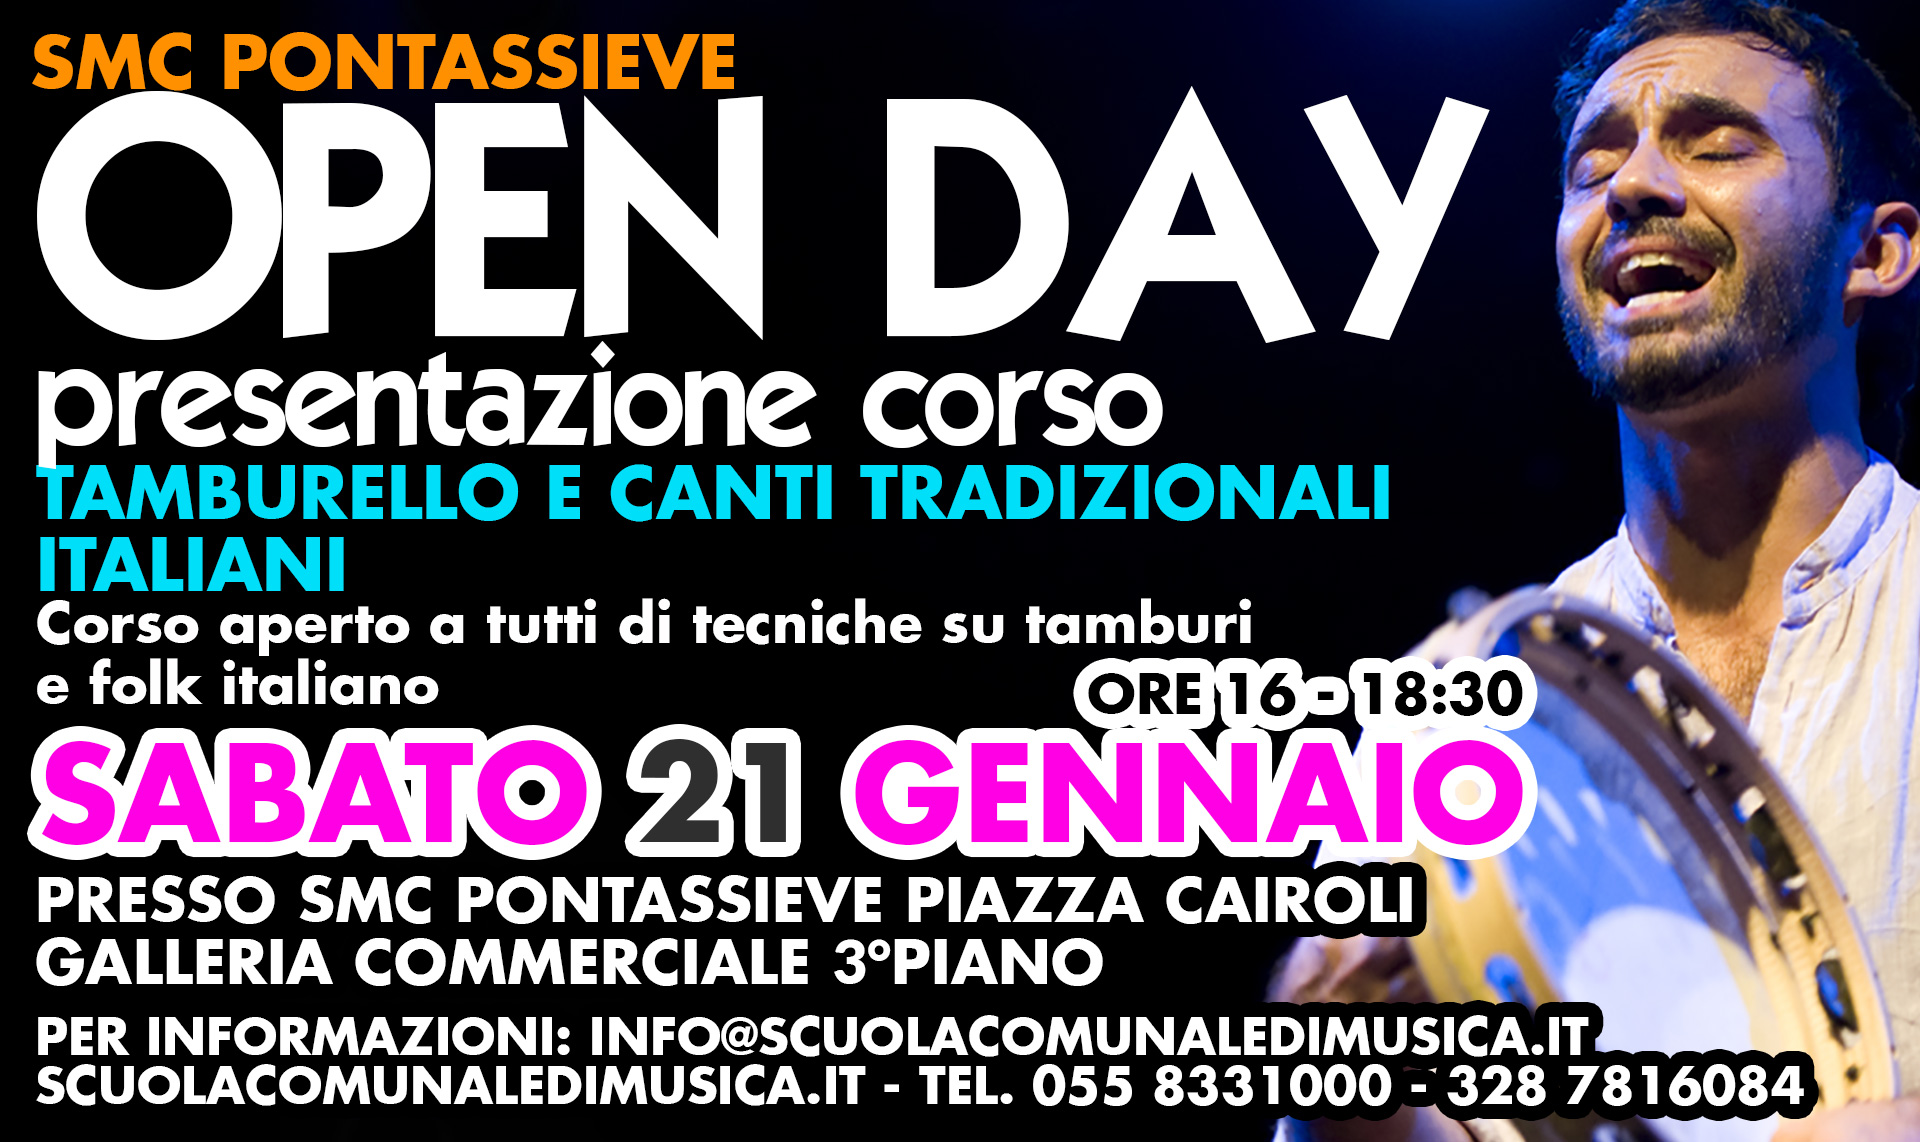 Open Day e presentazione del corso di tamburello e canti tradizionali italiani Sabato 21 Gennaio ore 16:00